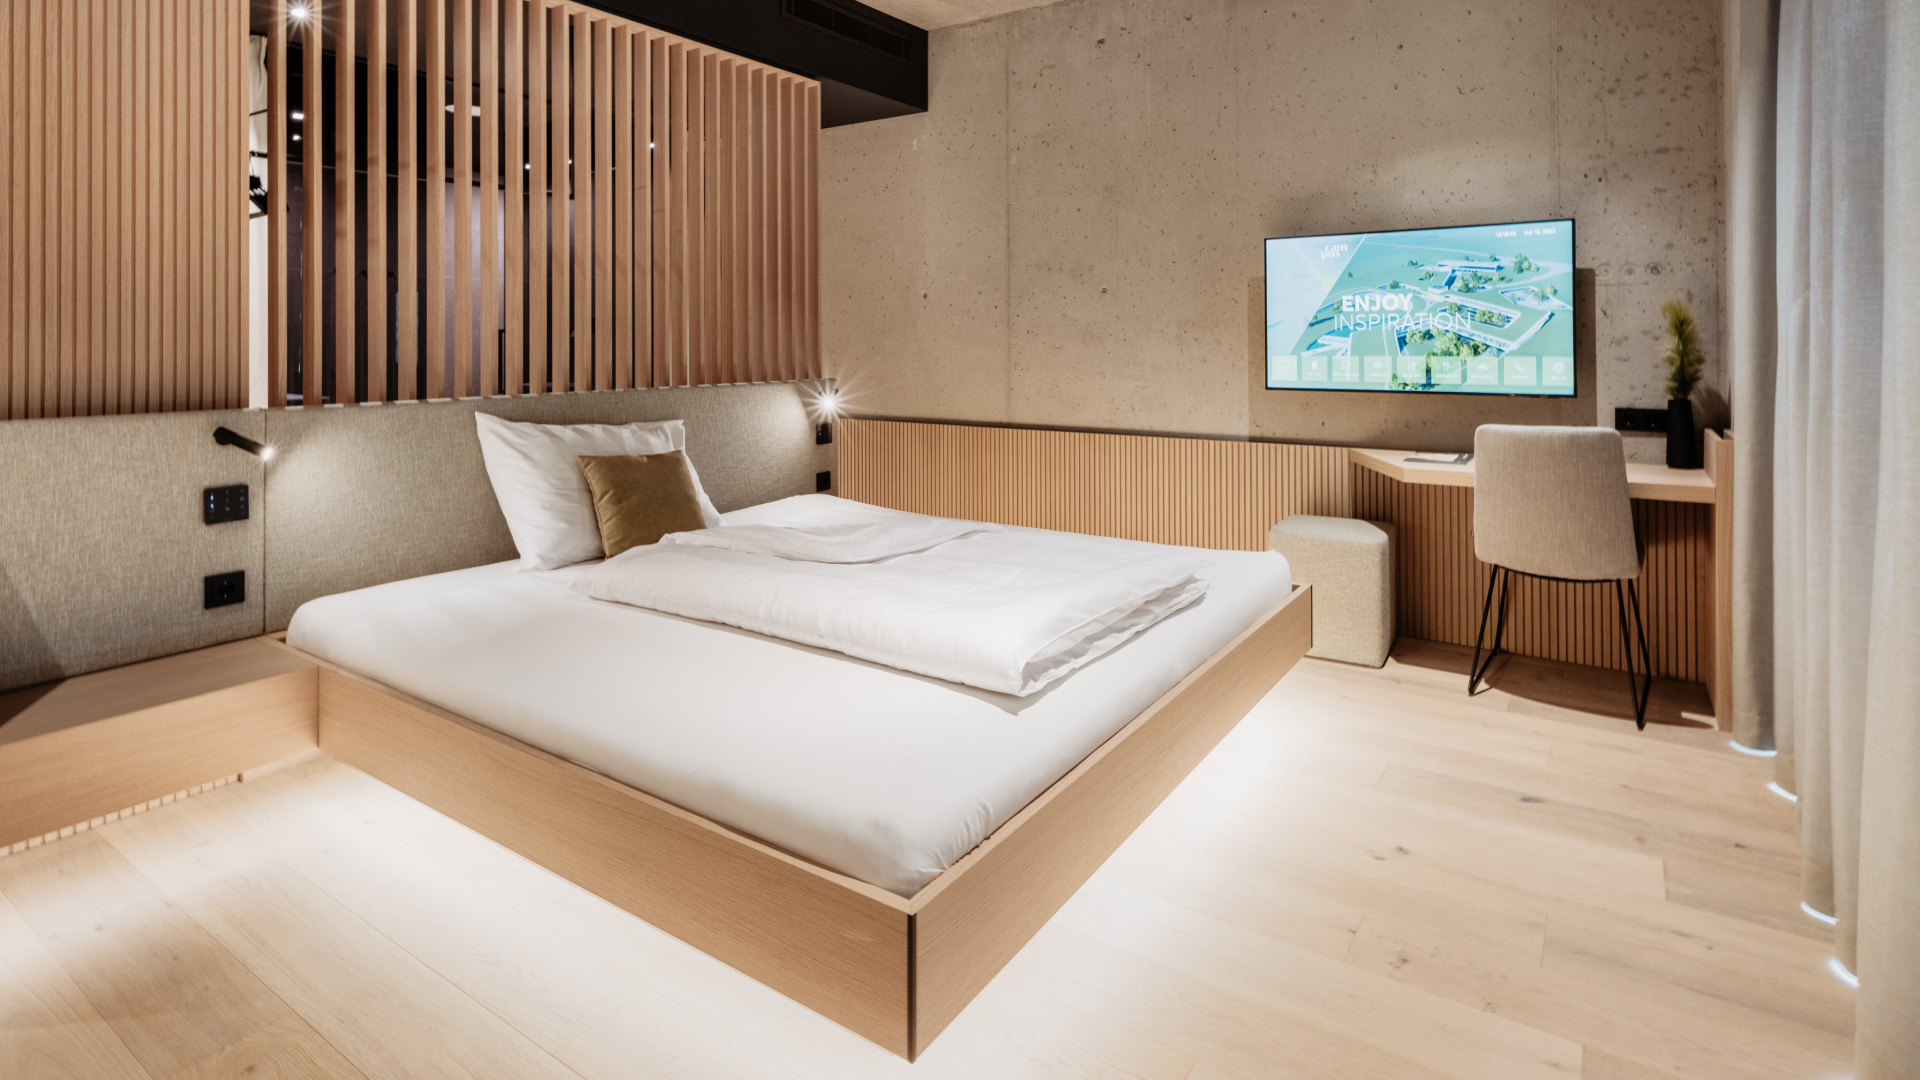 Nowoczesne i inteligentne pokoje hotelowe oferujące gościom maksymalny komfort